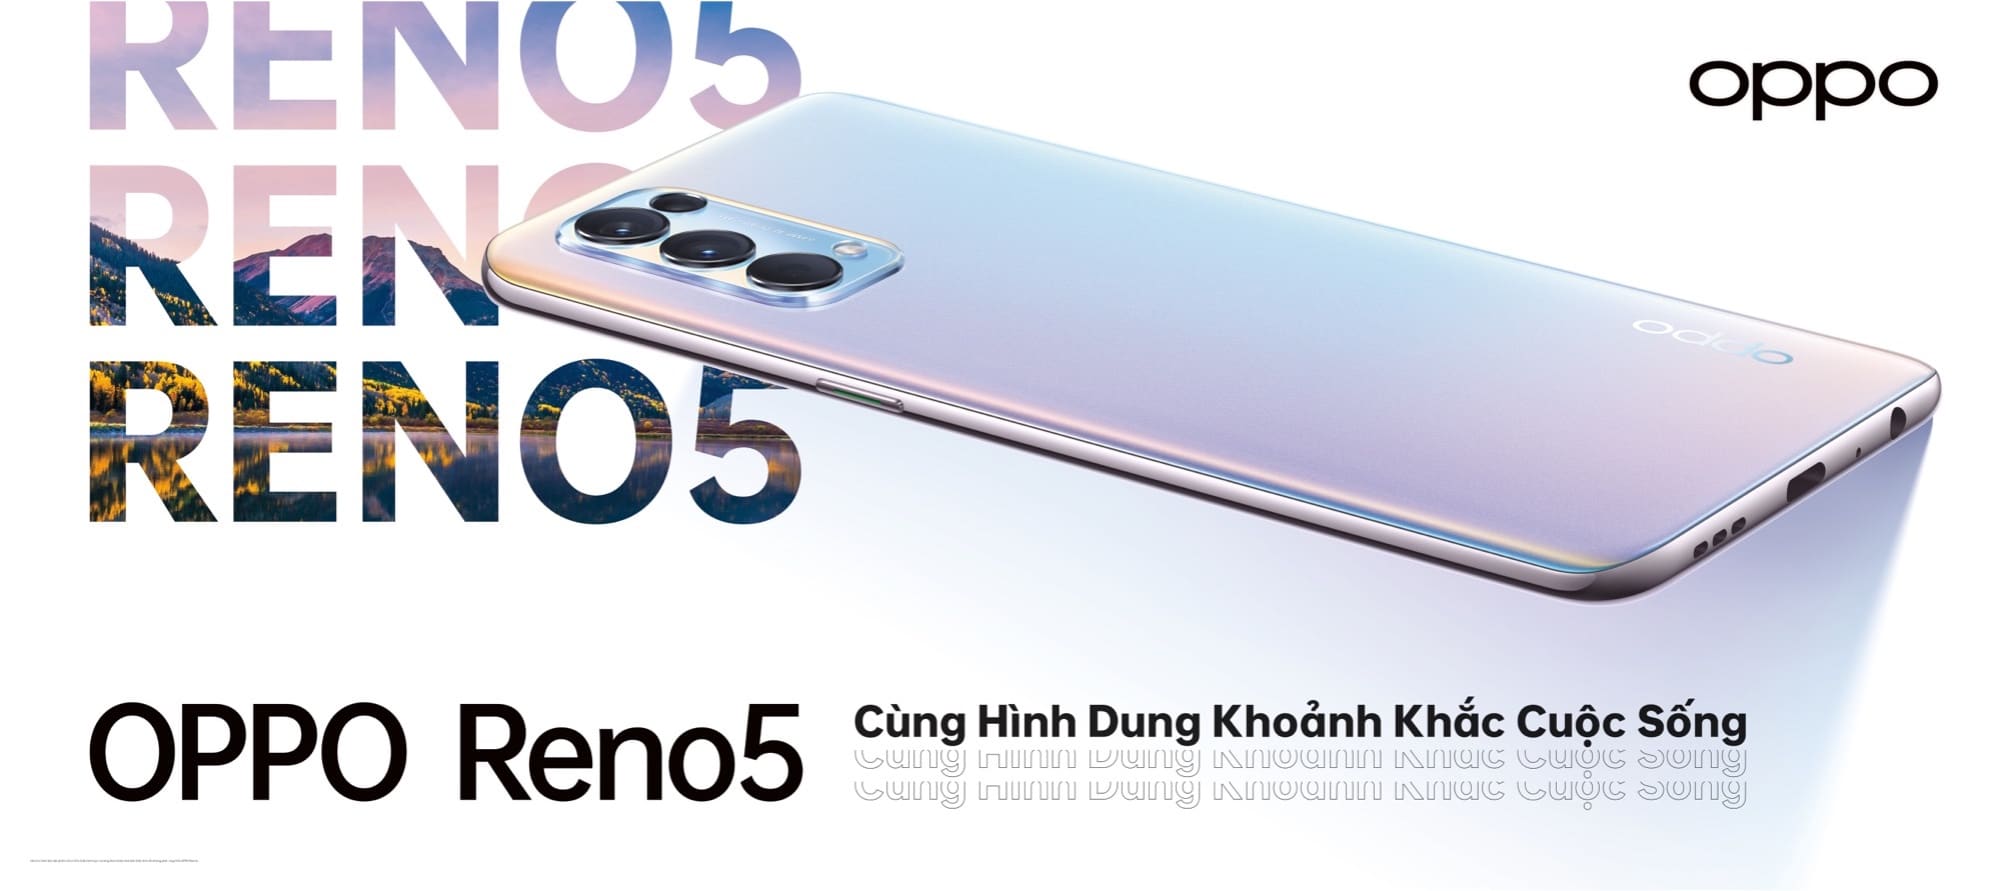 OPPO Reno5 chính thức ra mắt tại Việt Nam, giá 8,690,000 VND